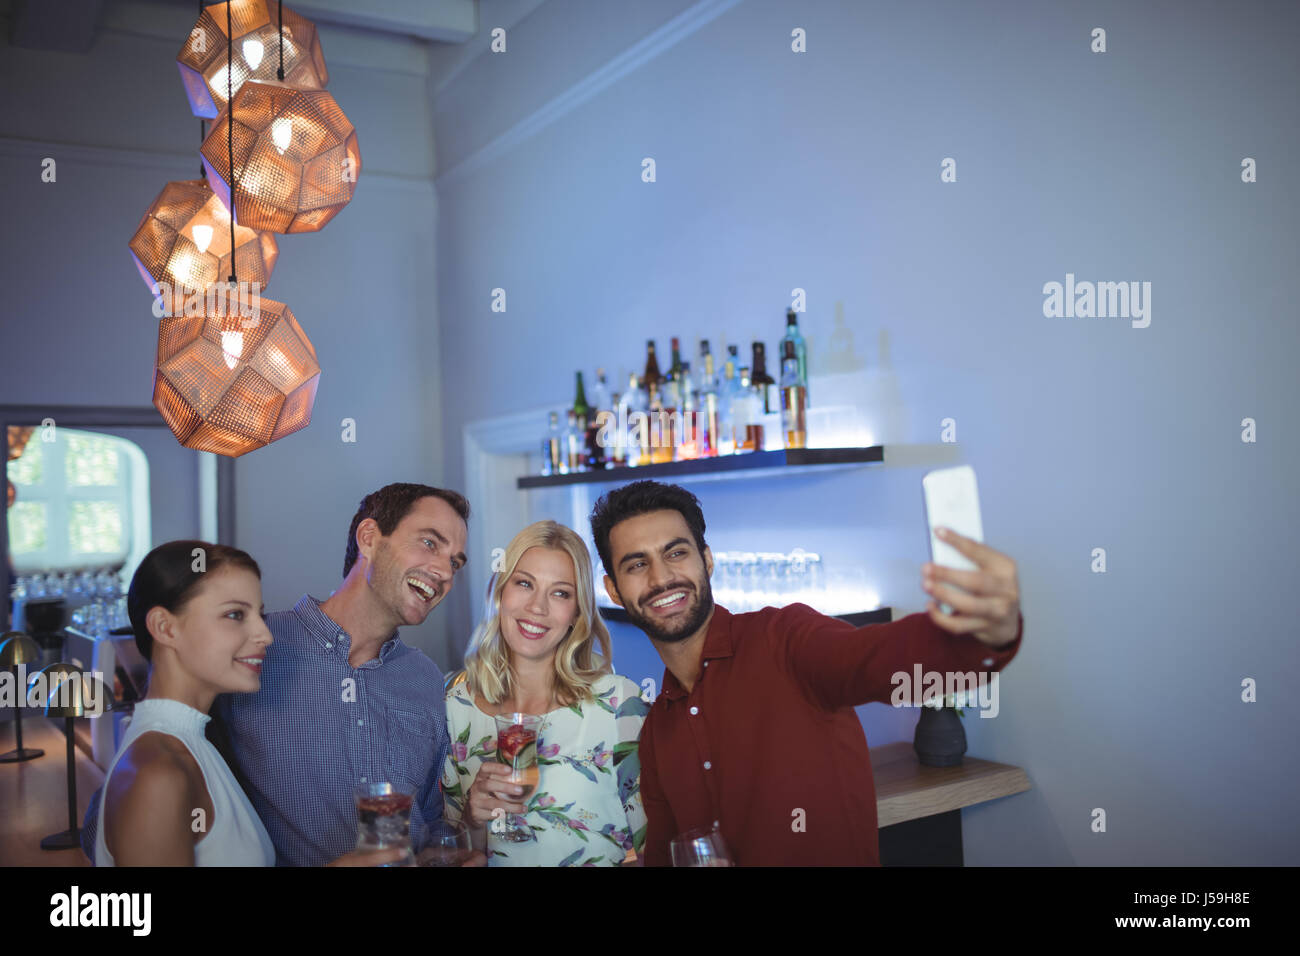 Lächelnd zwei Paare posieren zusammen während des Gesprächs ein Selbstporträt im bar-restaurant Stockfoto